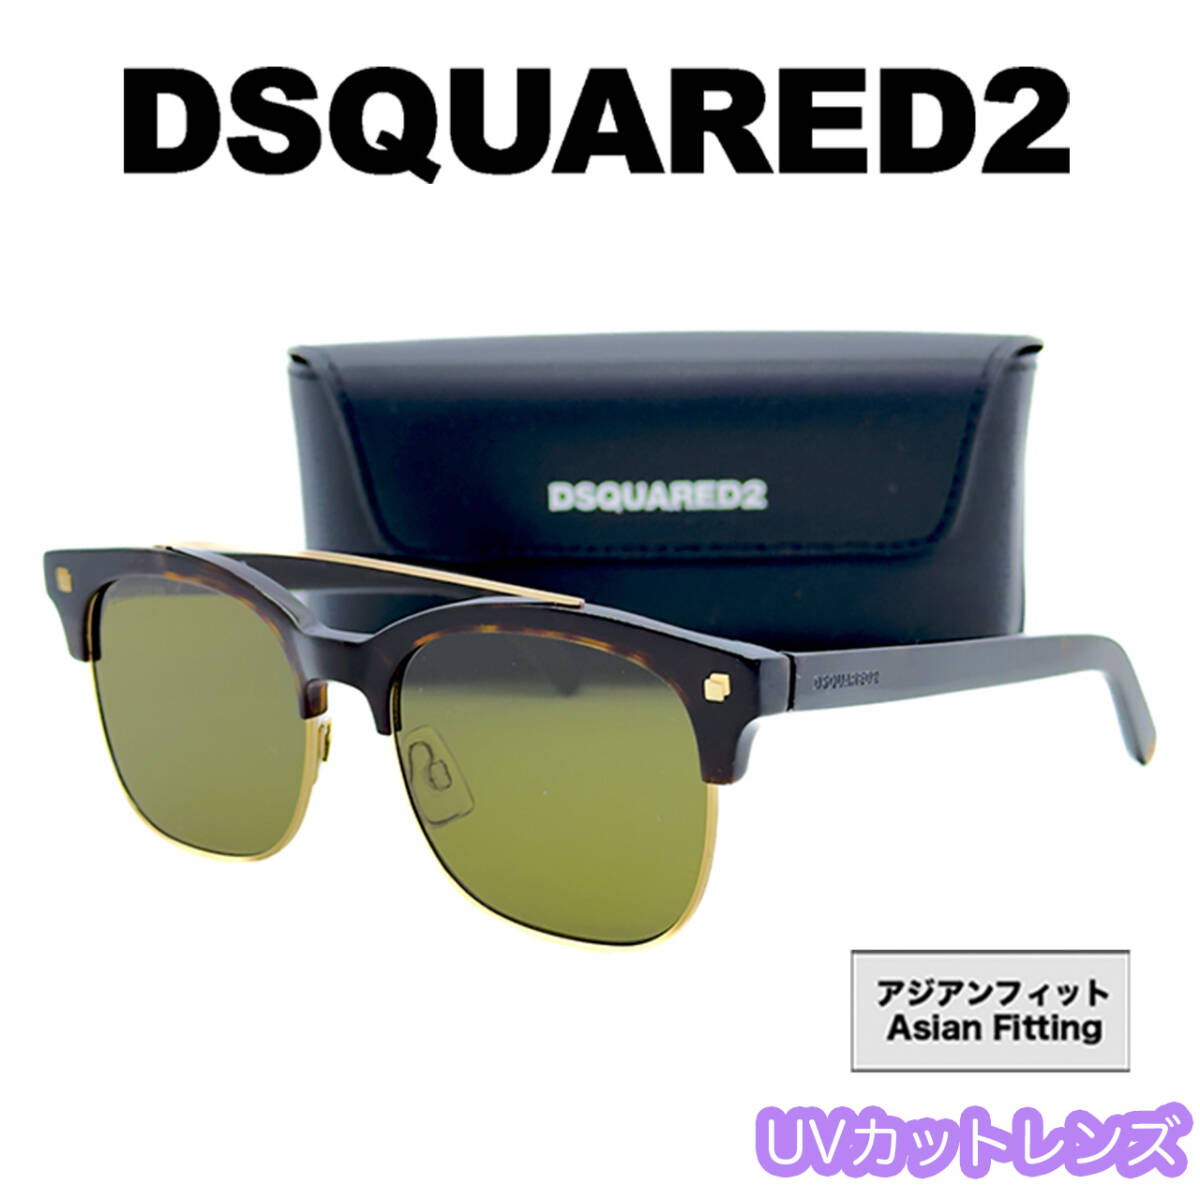 【新品/匿名配送】DSQUARED2 ディースクエアード サングラス DQ0207 ハバナ ゴールド アジアンフィット メンズ レディース